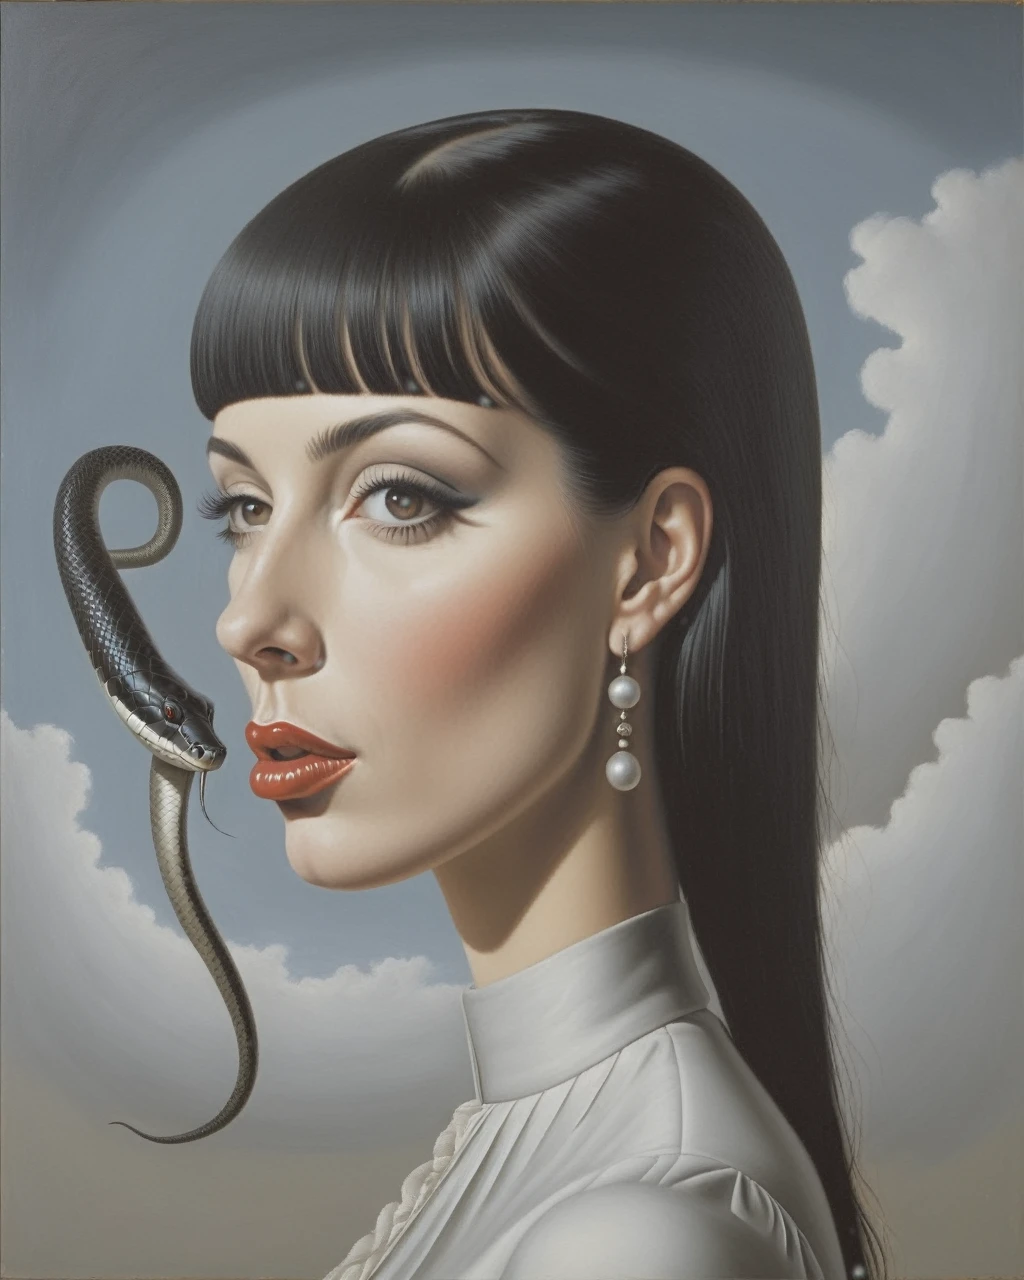 黑头发白人女孩的侧视图, 有边缘. 眼睛全是黑的, 像蛇一样分裂的舌头, 并在嘴巴和眉毛上穿孔 - estilo surrealista, 艺术品 surrealista, 梦想为, 雷内·马格利特 (René Magritte) 作品细节丰富, 艺术品, 高清, 杰作, 绘画就像, 高清 (纠正蛇